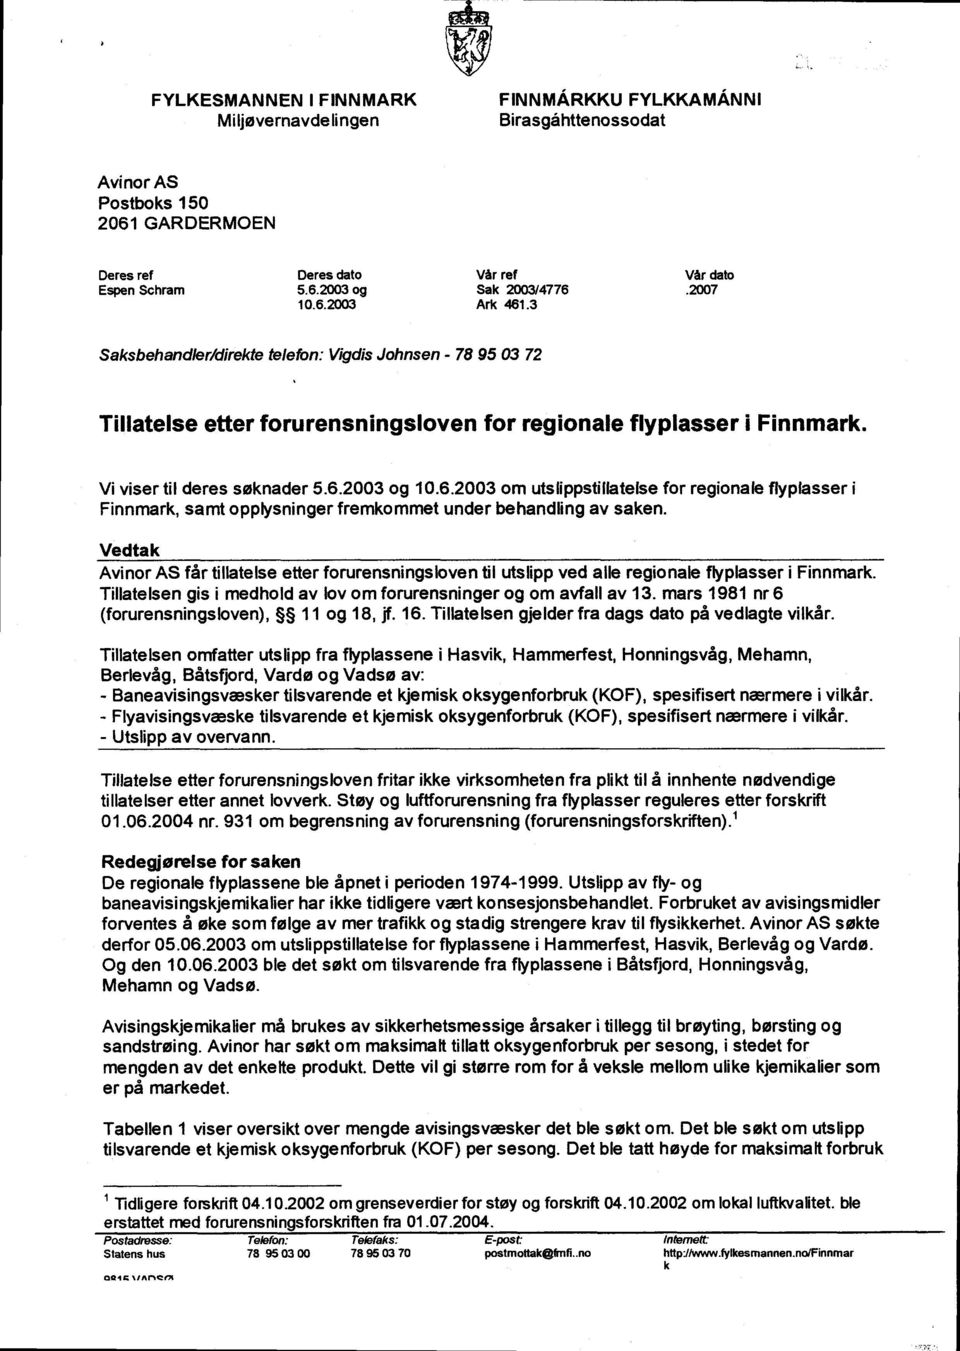 6.2003 om utslippstillatelse for regionale flyplasser i Finnmark, samt opplysninger fremkommet under behandling av saken.